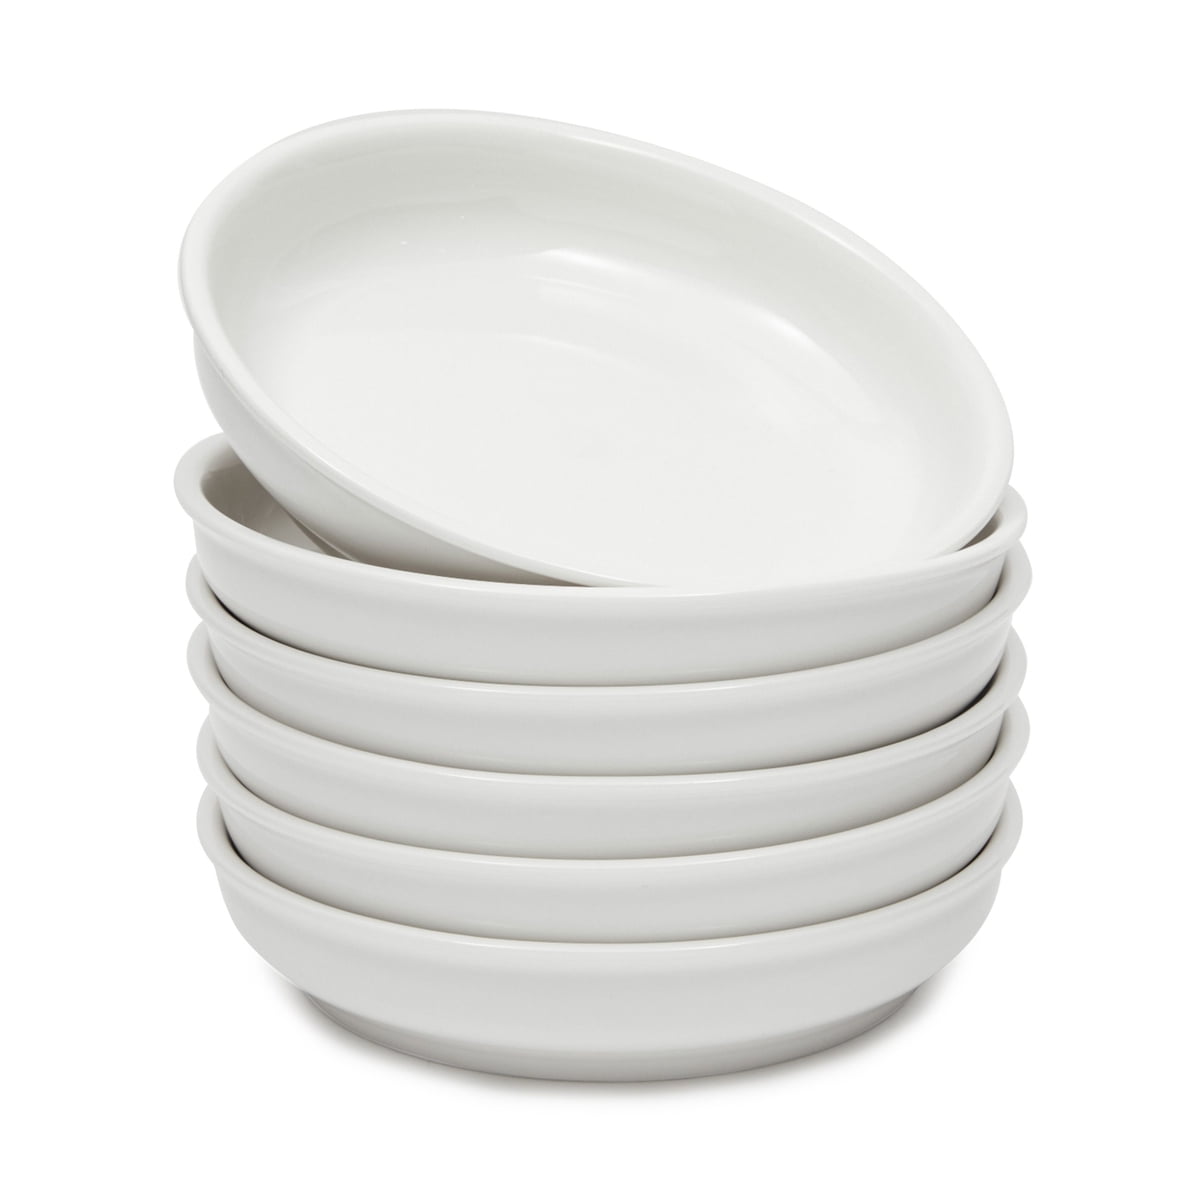 Salad and Desserts Bowl,Stackable Porcelain Bowls Black,White for Cereal